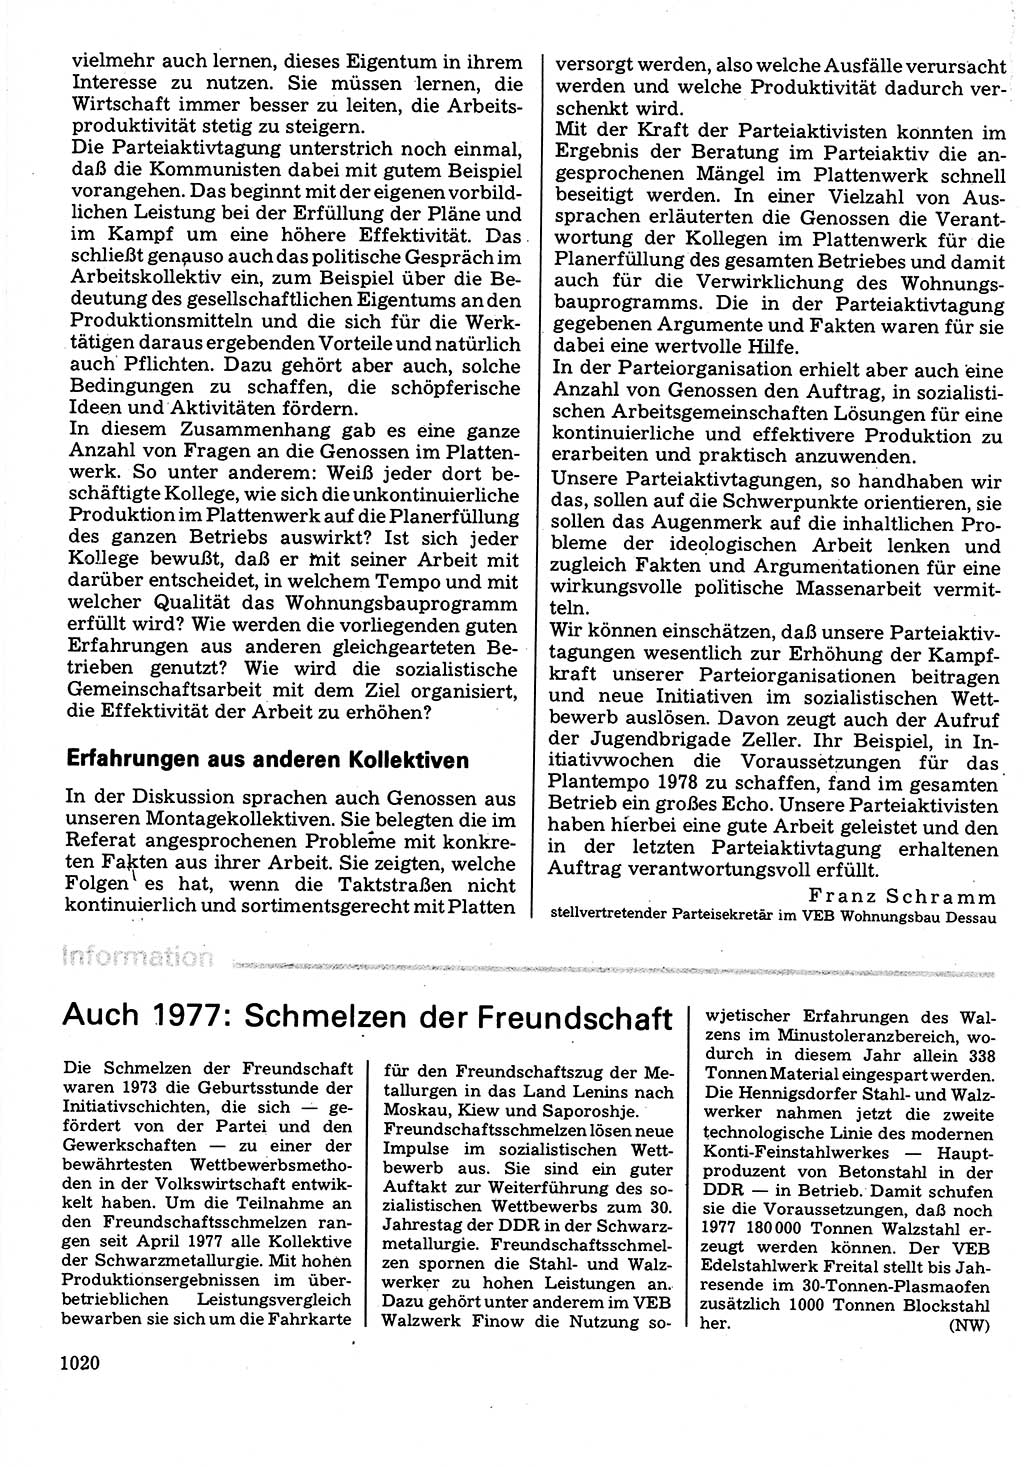 Neuer Weg (NW), Organ des Zentralkomitees (ZK) der SED (Sozialistische Einheitspartei Deutschlands) für Fragen des Parteilebens, 32. Jahrgang [Deutsche Demokratische Republik (DDR)] 1977, Seite 1020 (NW ZK SED DDR 1977, S. 1020)